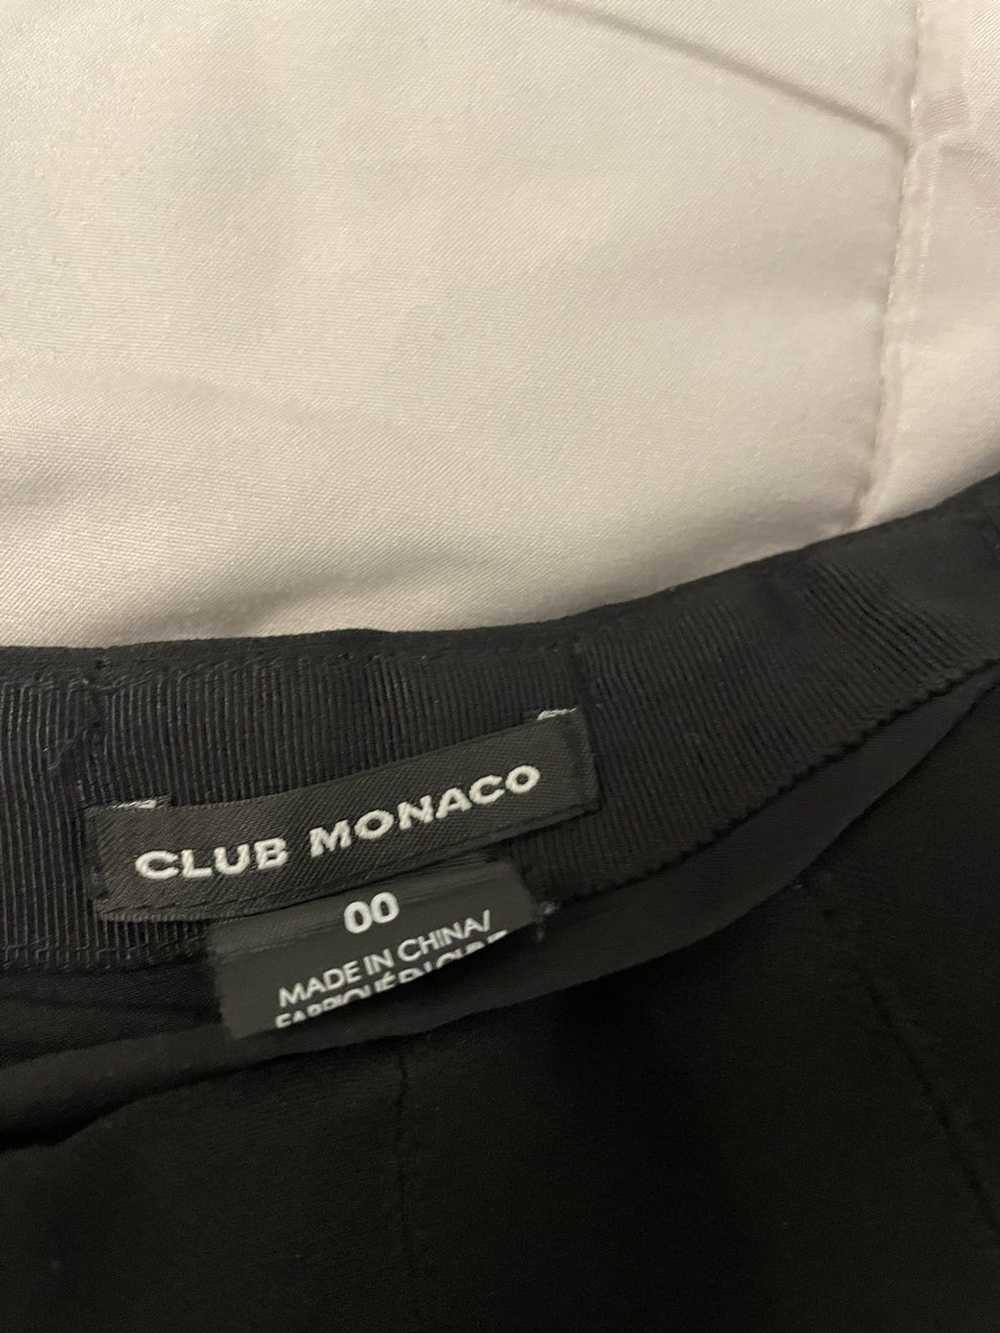 Club Monaco Club monaco skirt - image 3